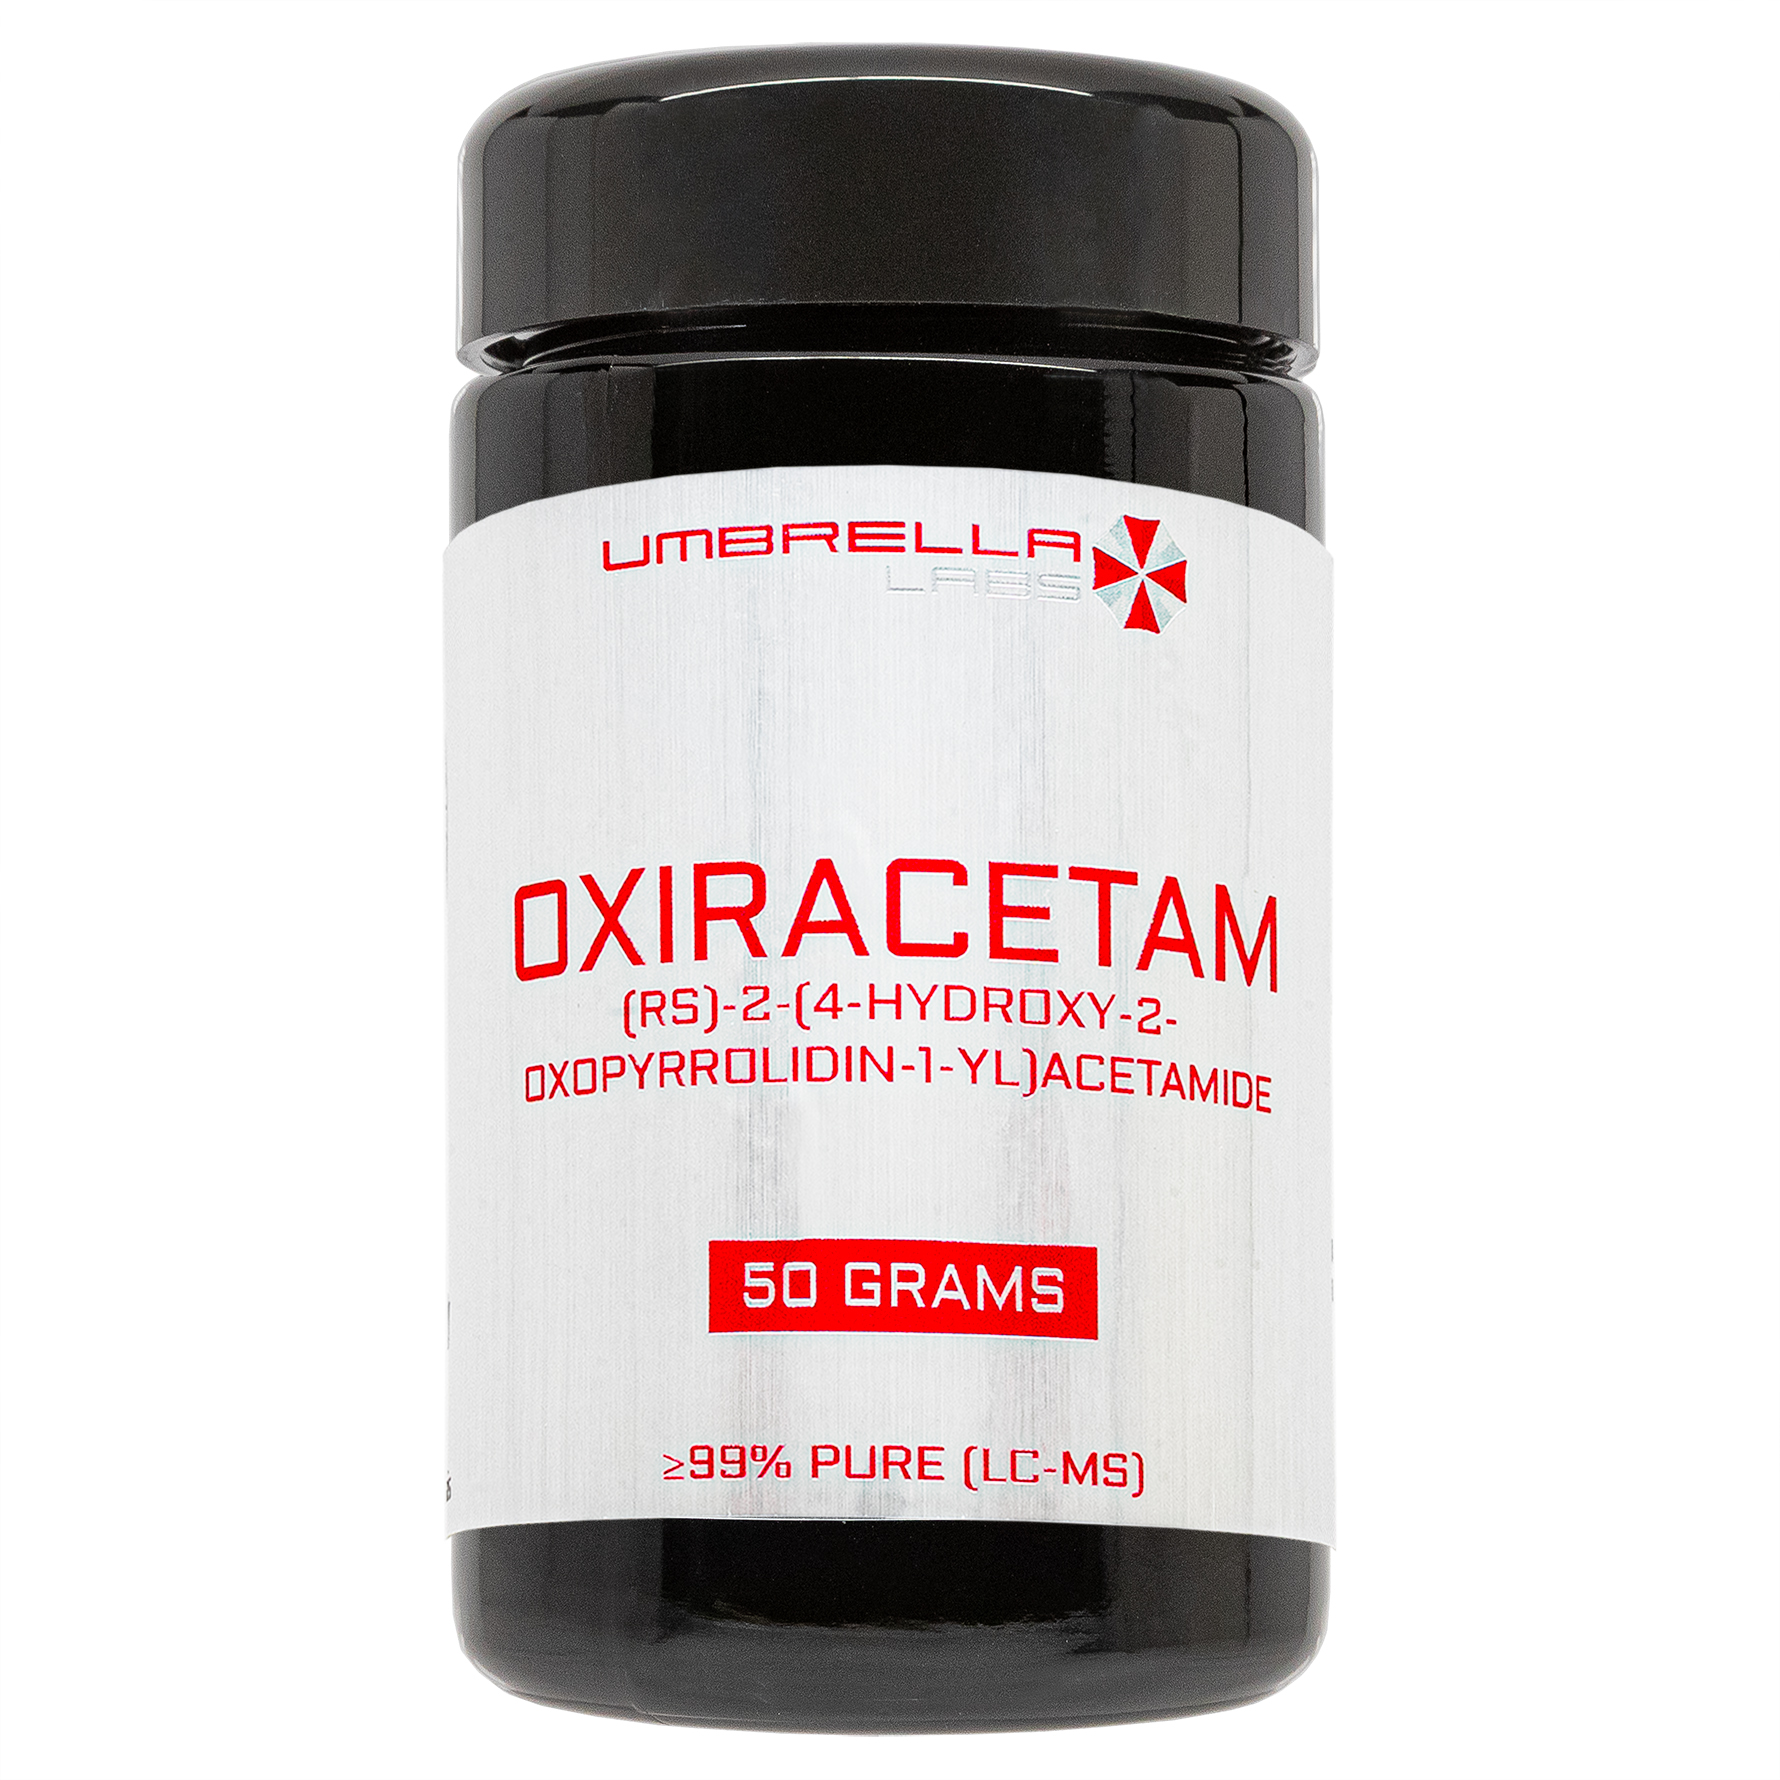 oxiracetam powder (50 grams)